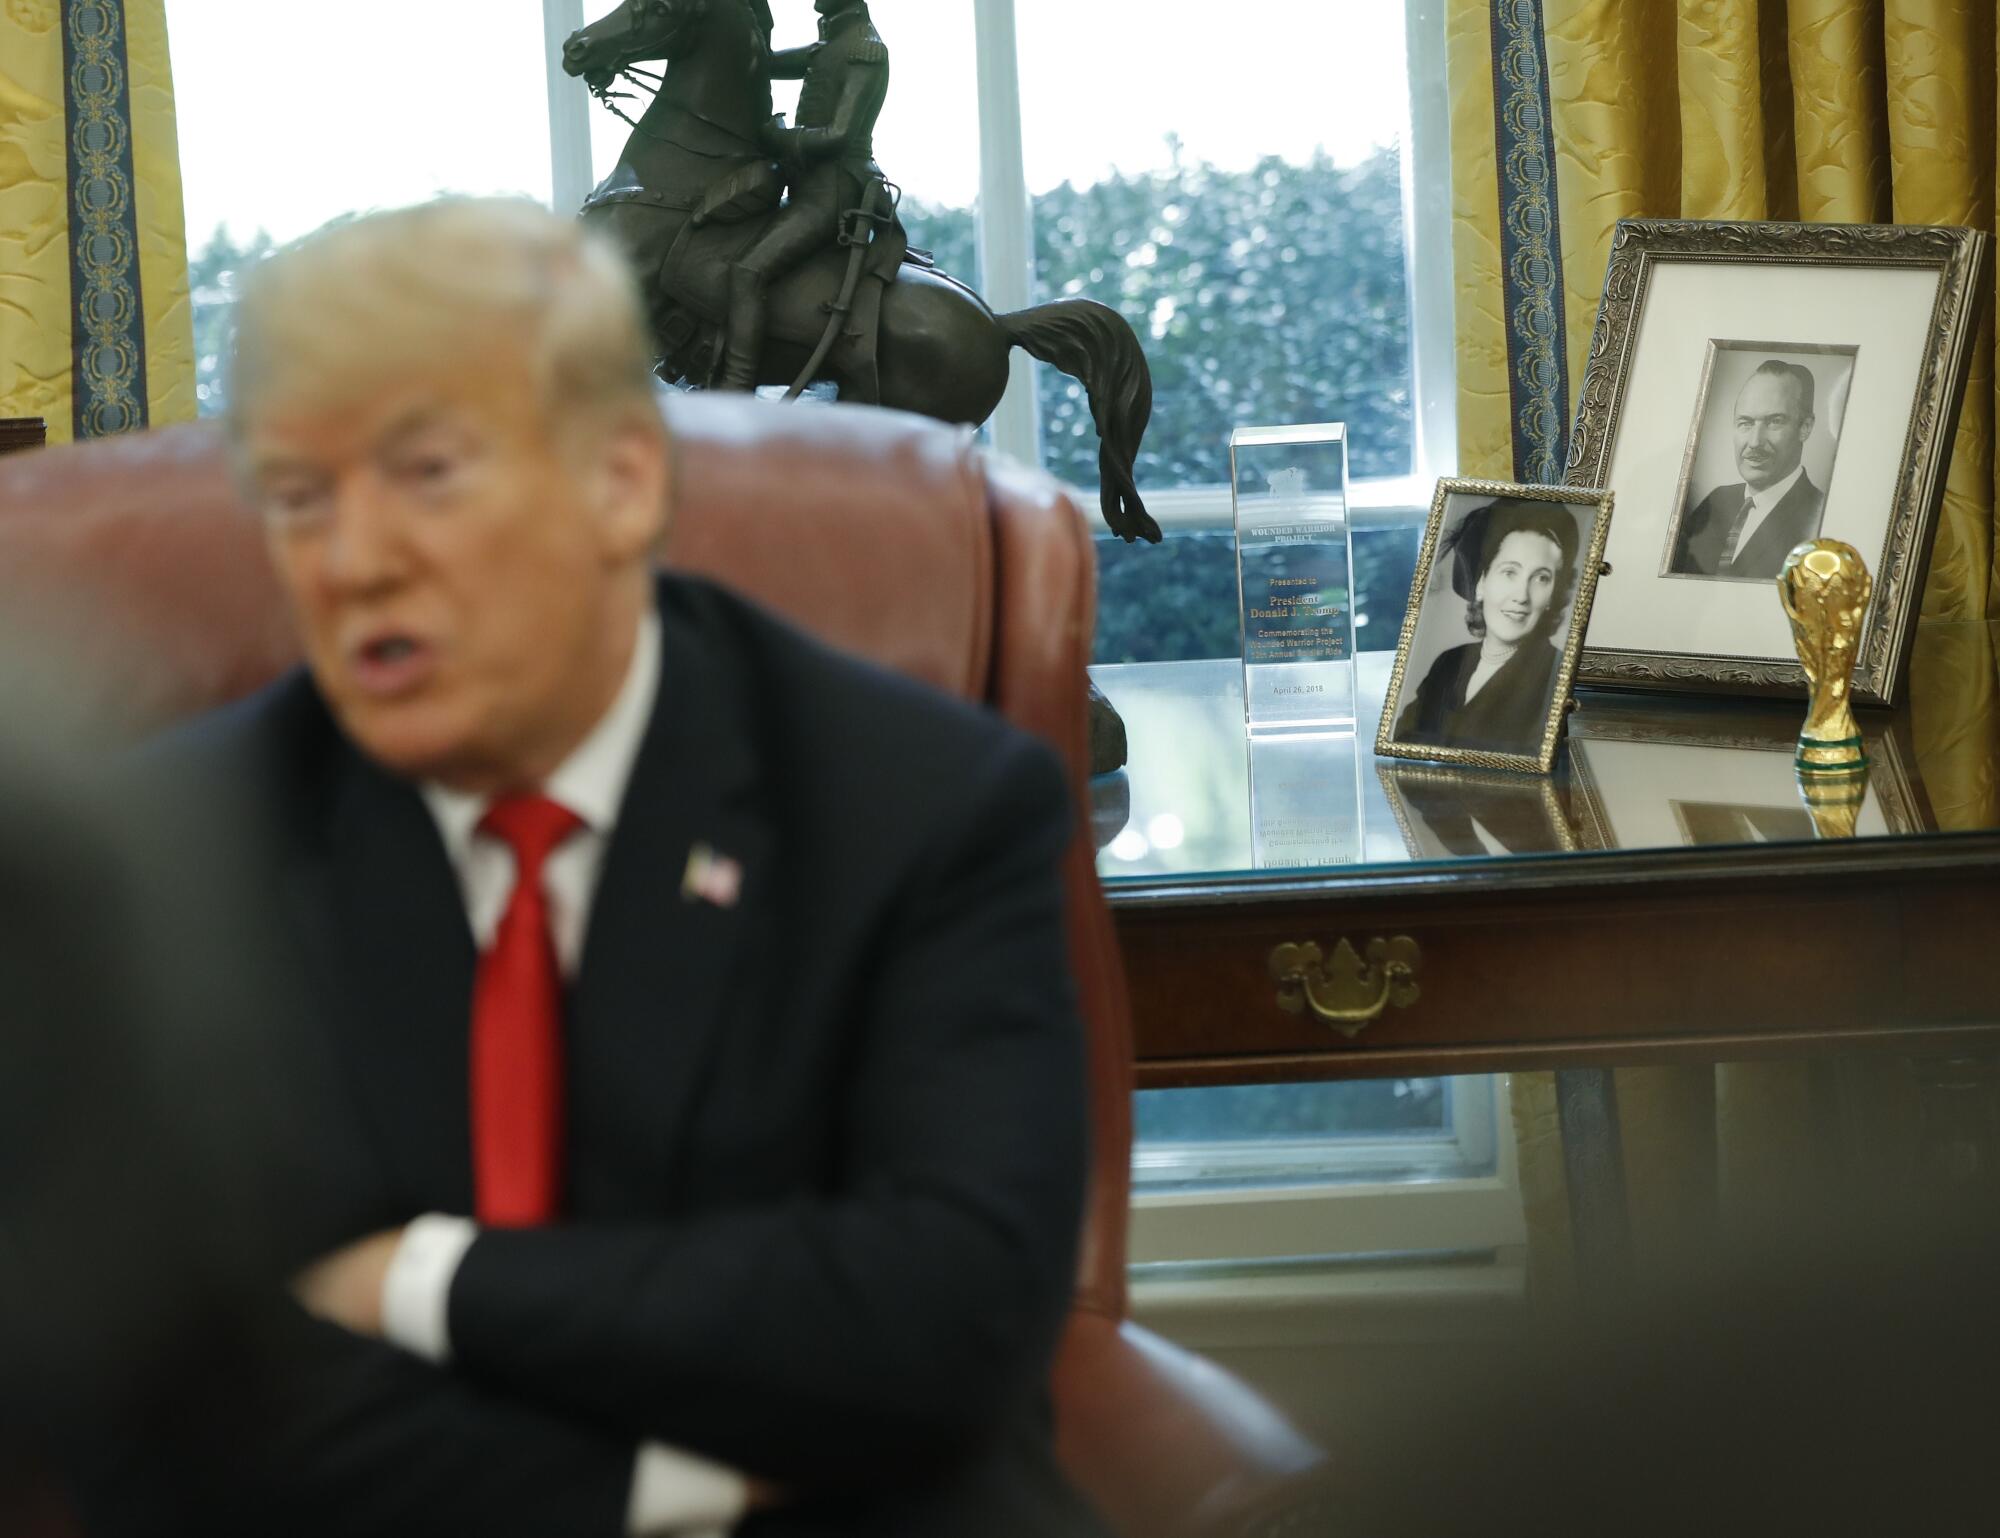 Um homem de terno escuro e gravata vermelha, de braços cruzados, fala em frente a uma mesa com fotos emolduradas e uma estátua de uma pessoa a cavalo